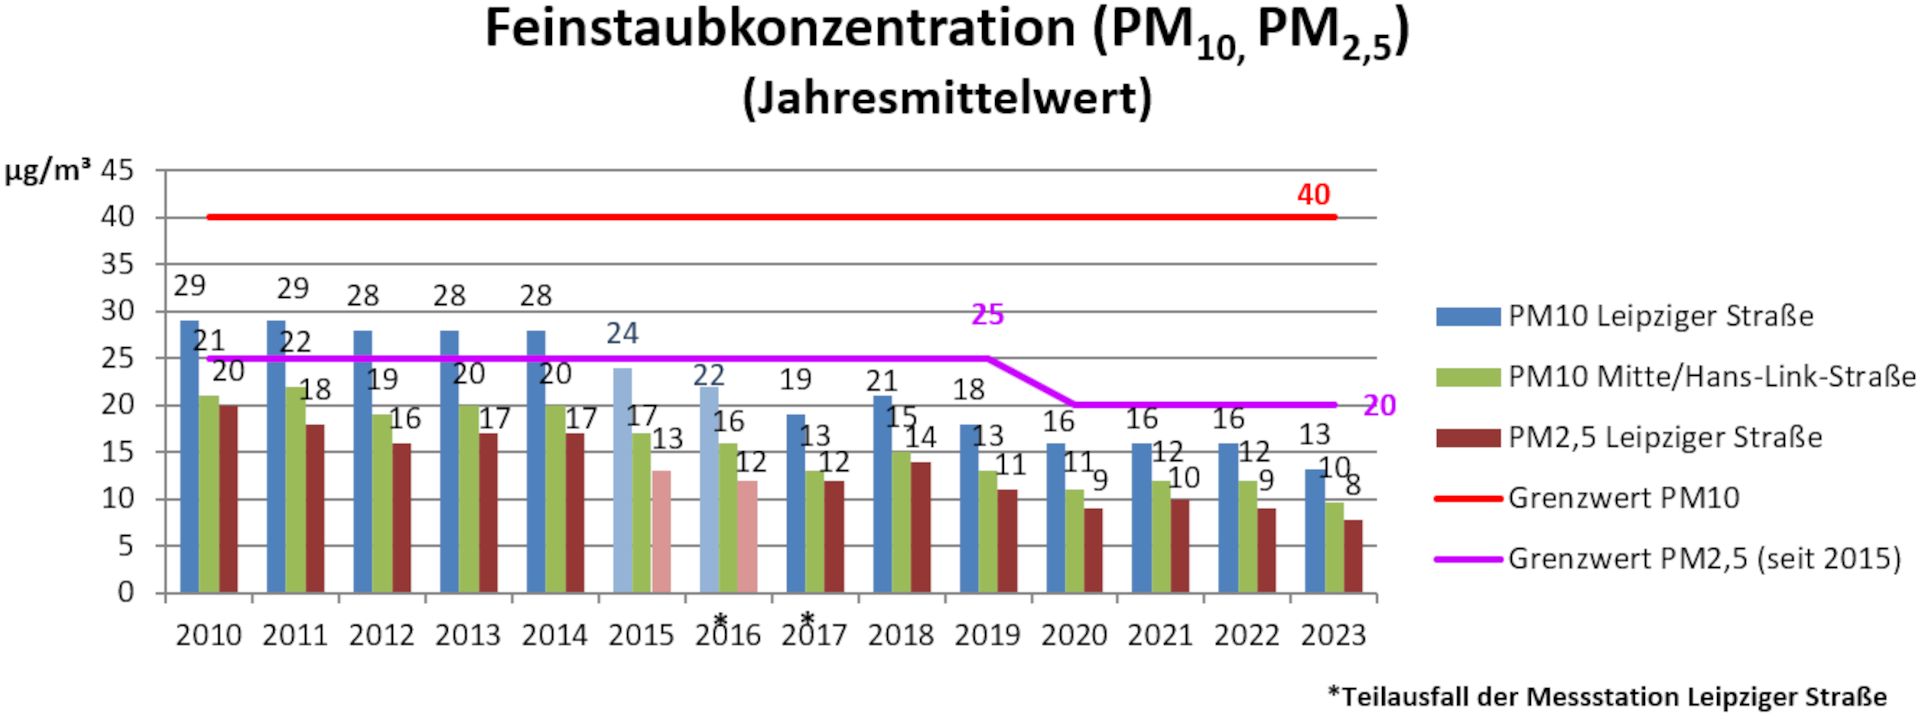 Jahresmittelwerte der Feinstaubkonzentration PM10, PM2, PM5 bis 2023